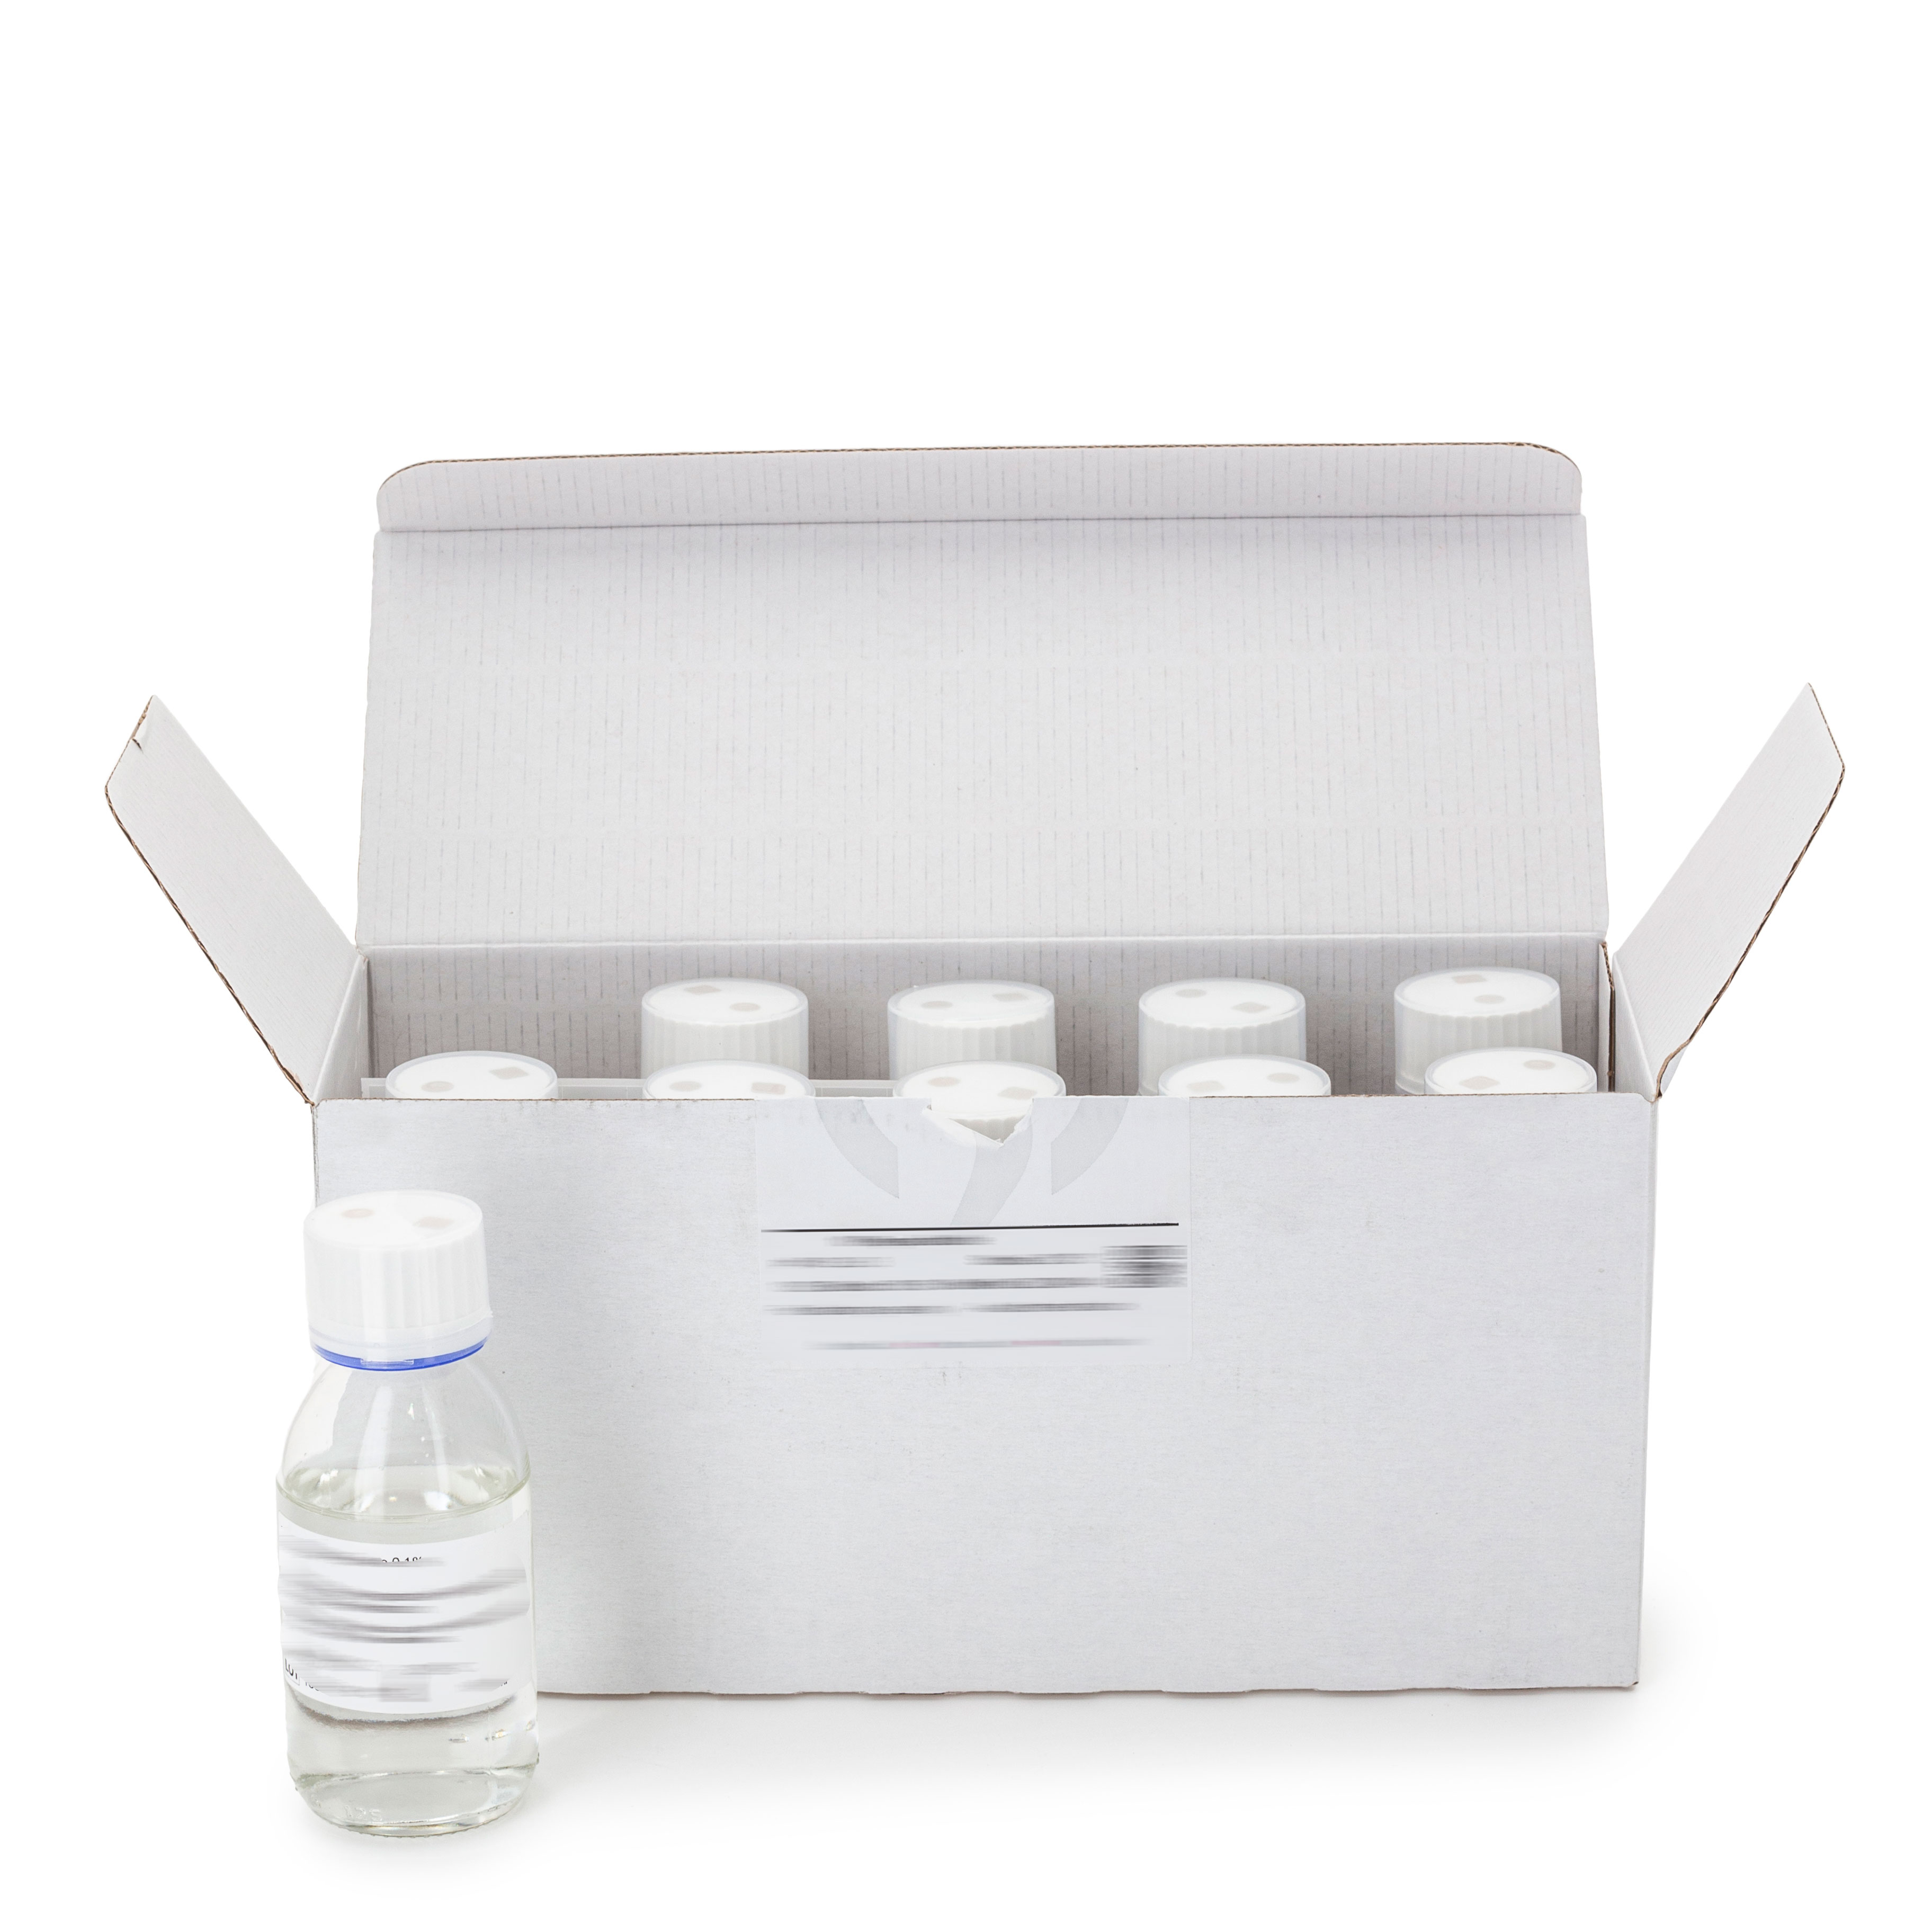 PBTL 3% Tween ® 0.3% Lecithin: Diluyente para la homogeneización de muestras para el examen microbiológico según el Método Armonizado de la Farmacopea Europea y la norma ISO.